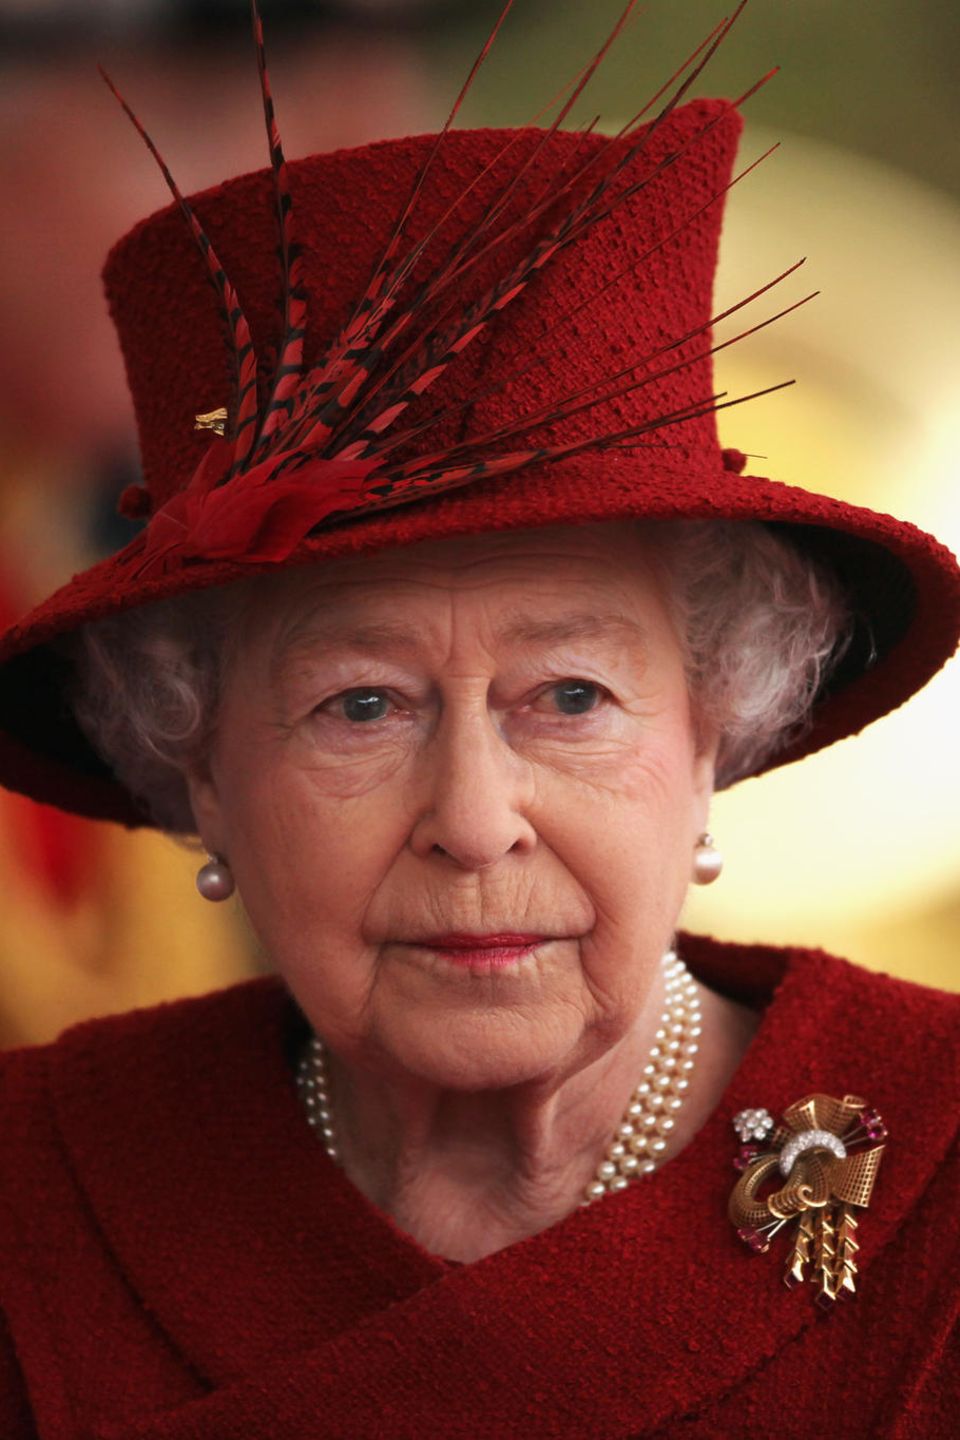 Queen Elizabeth